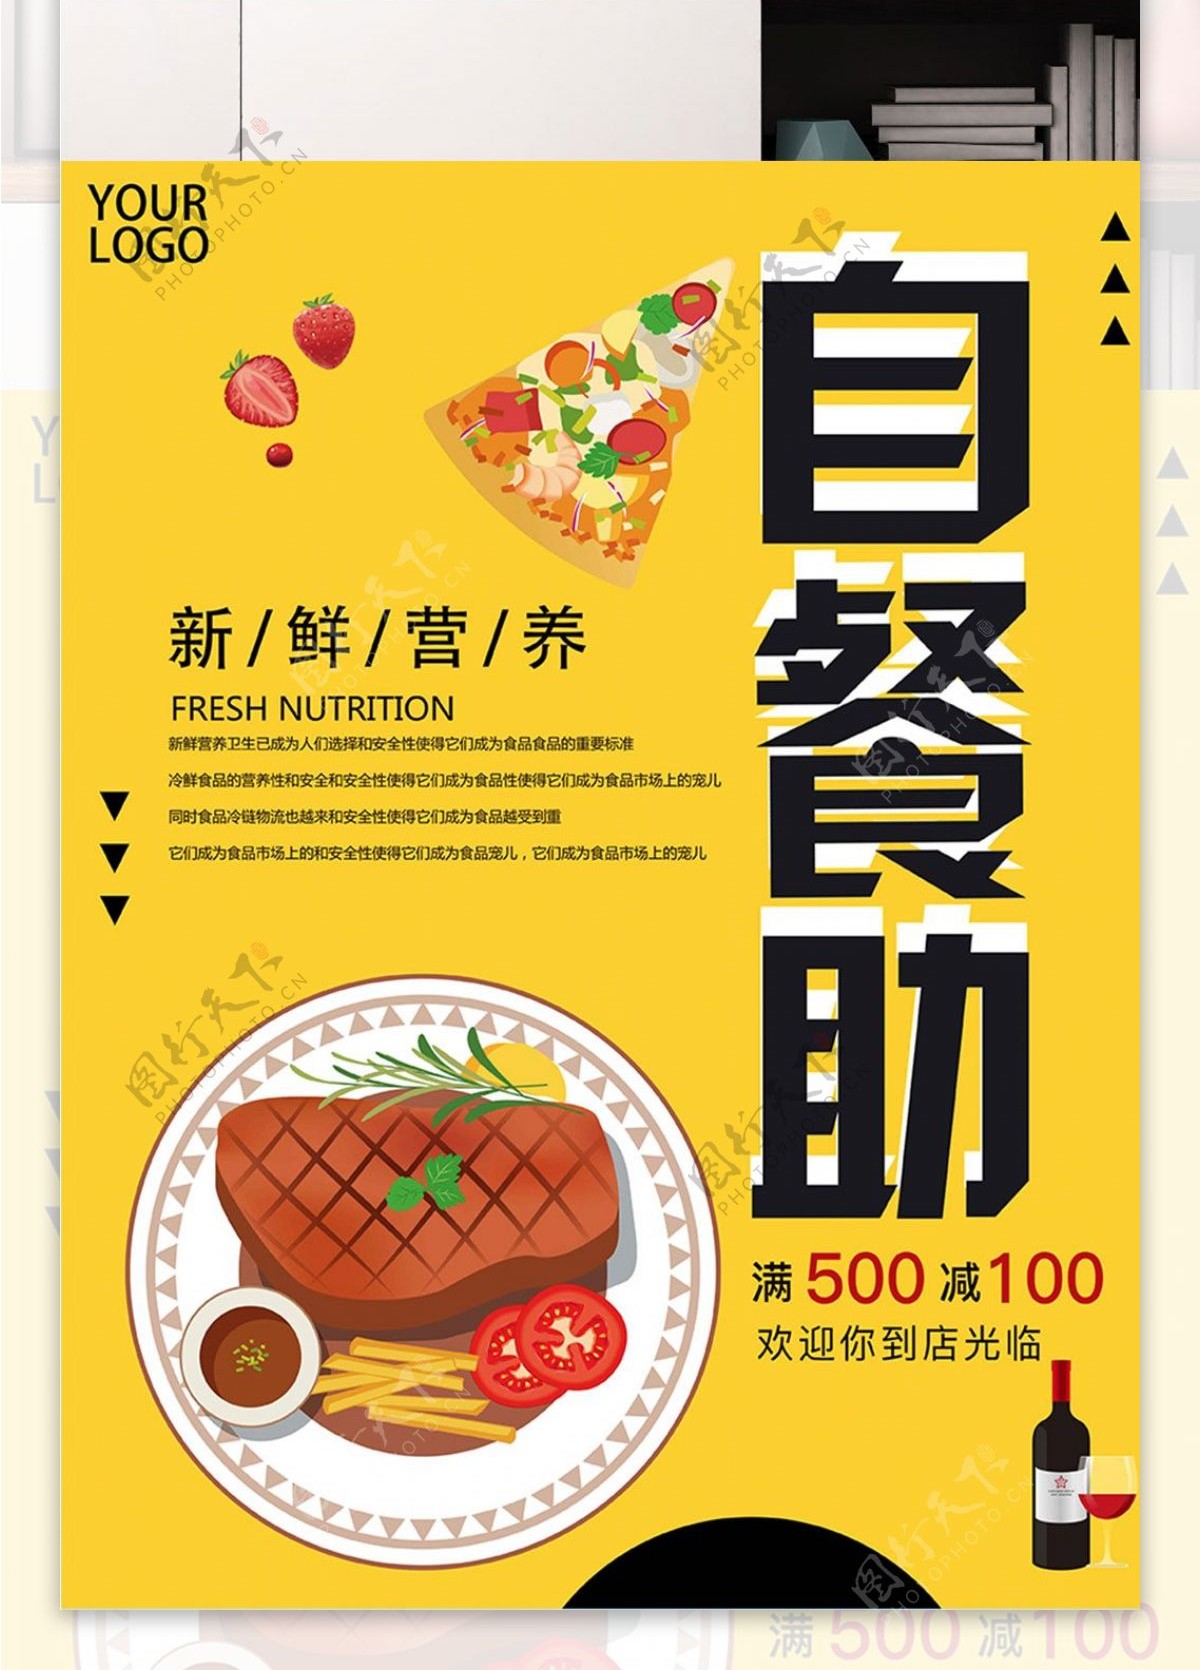 黄色背景简约大气美味自助餐宣传海报